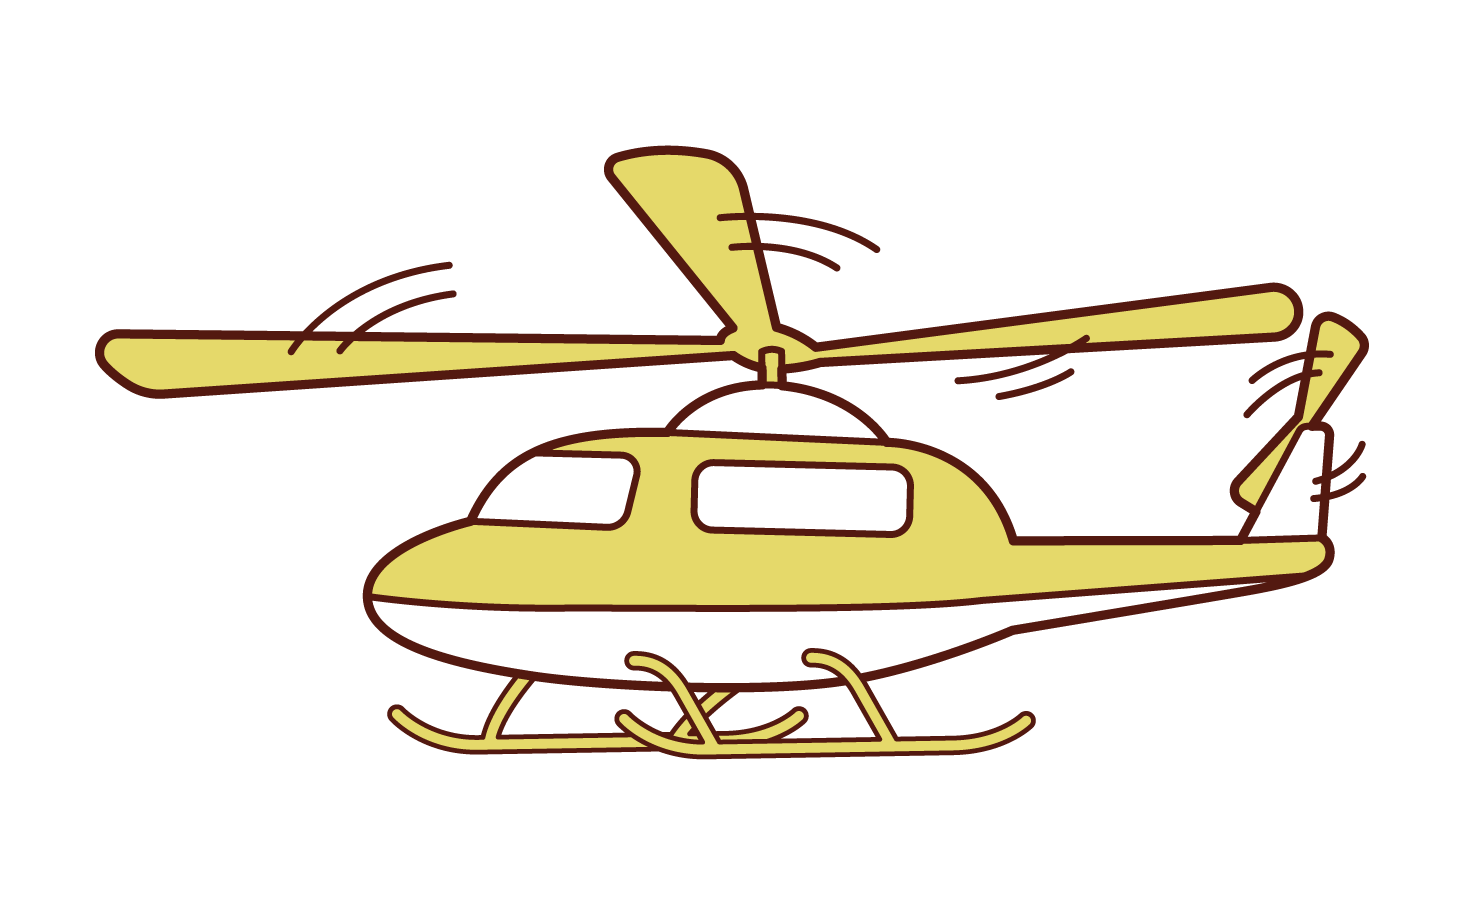 ヘリコプターのイラスト フリーイラスト素材 Kukukeke ククケケ